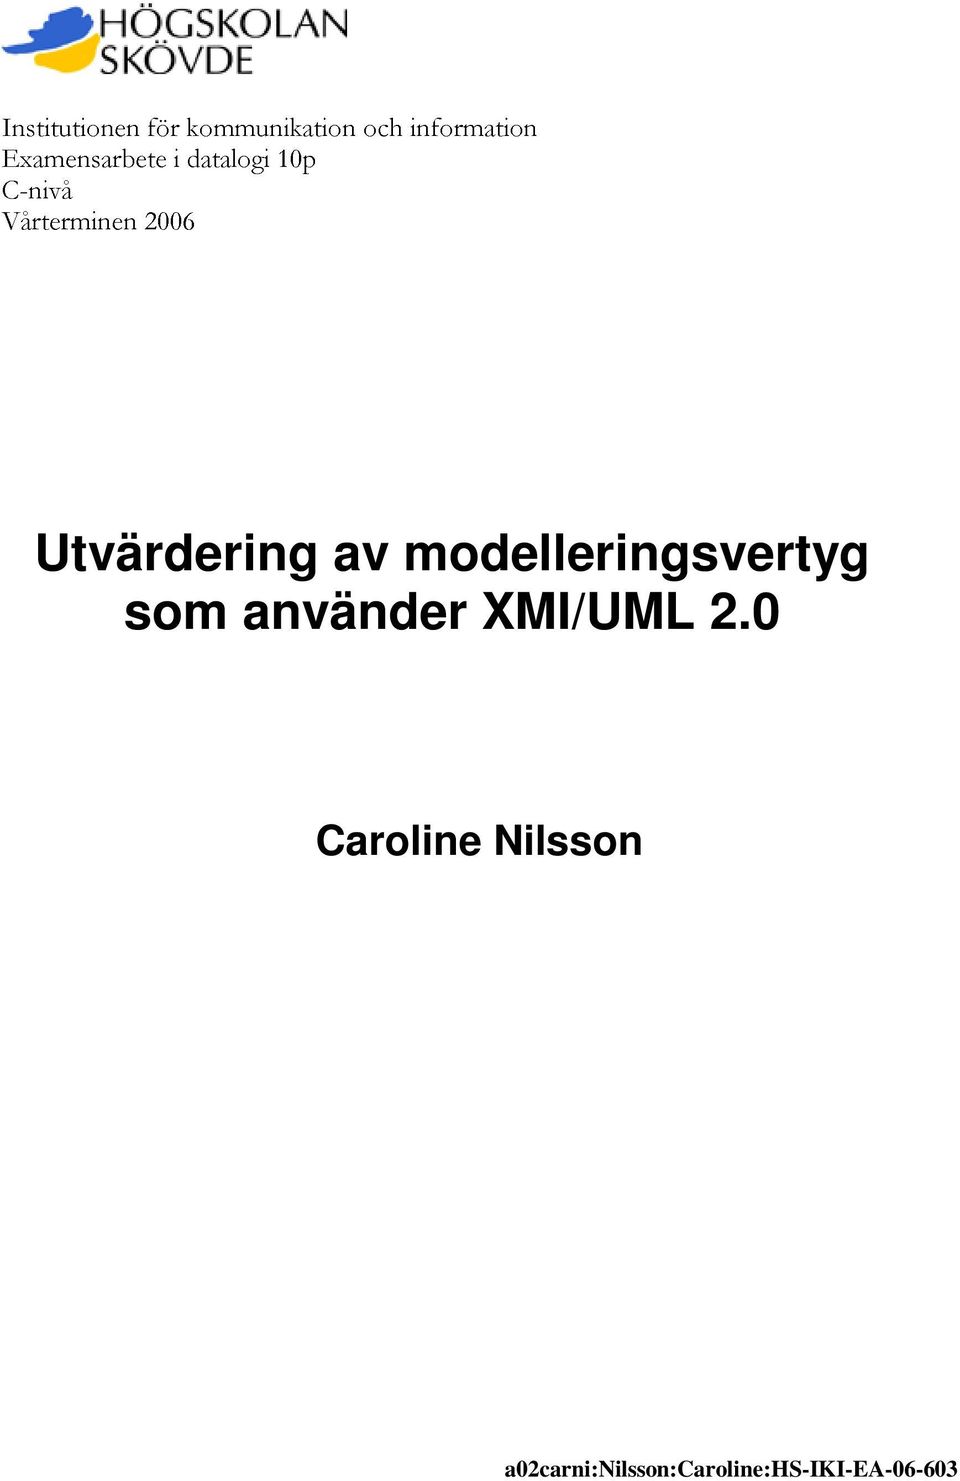 Utvärdering av modelleringsvertyg som använder XMI/UML